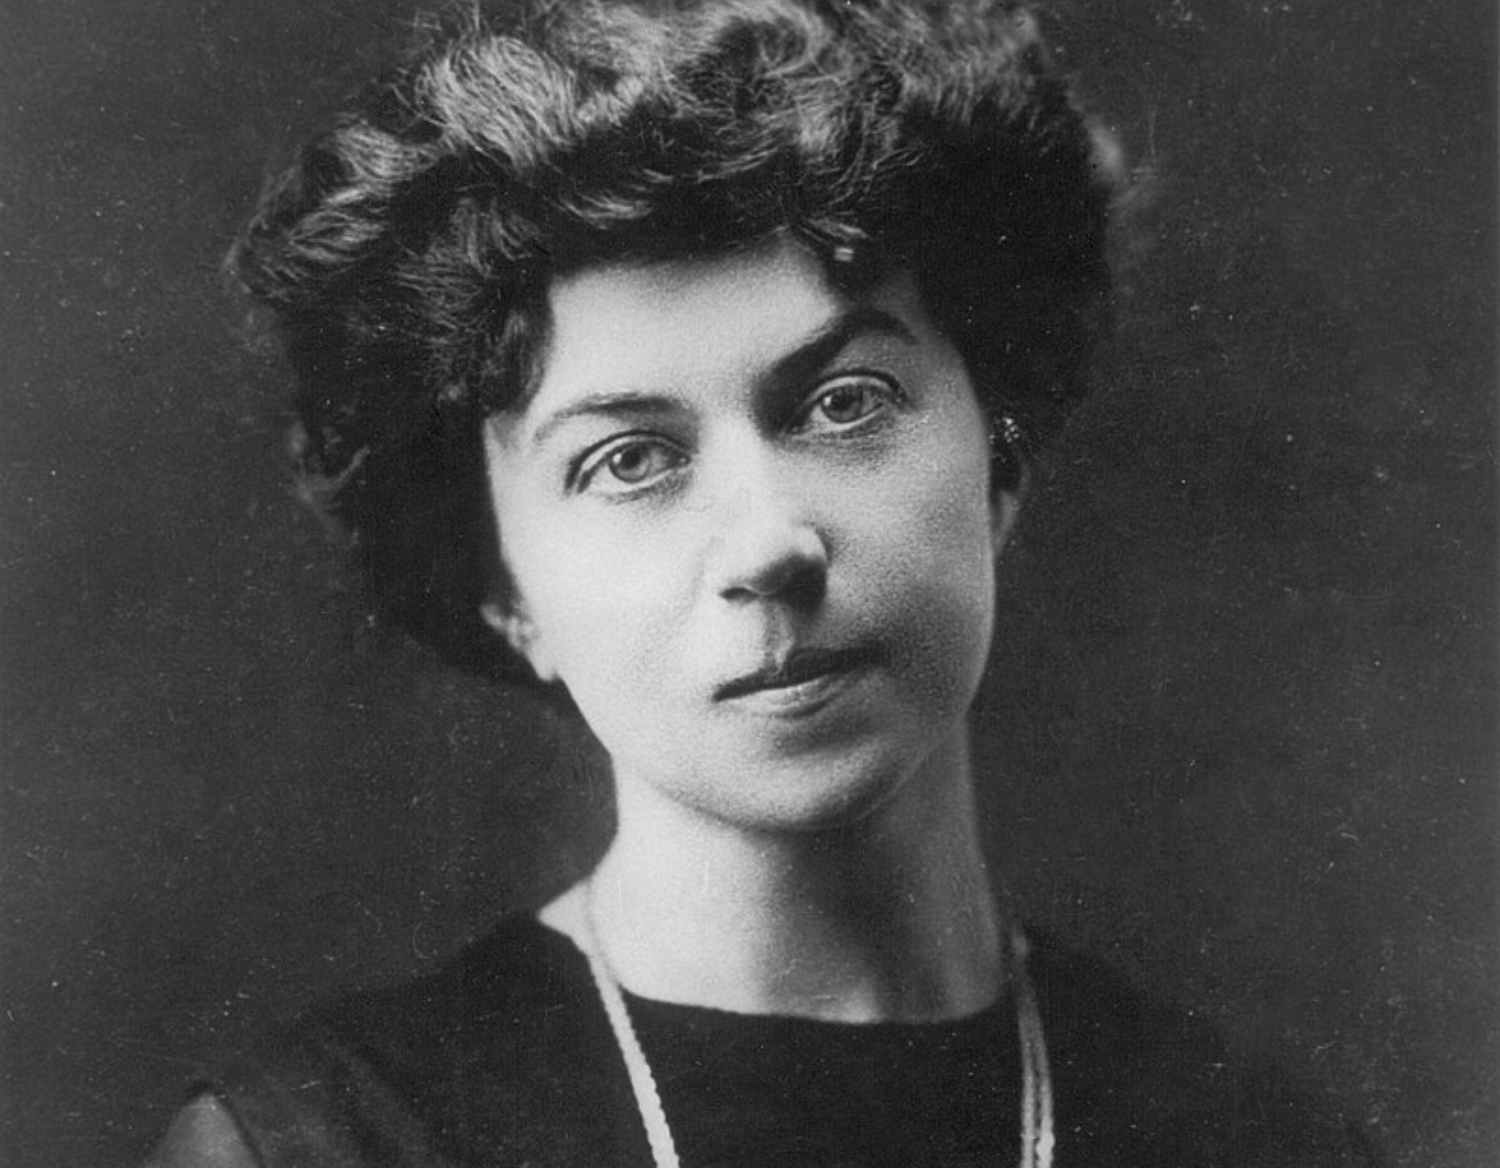 La historia de Aleksandra Mijáilovna, la primera mujer embajadora de la historia